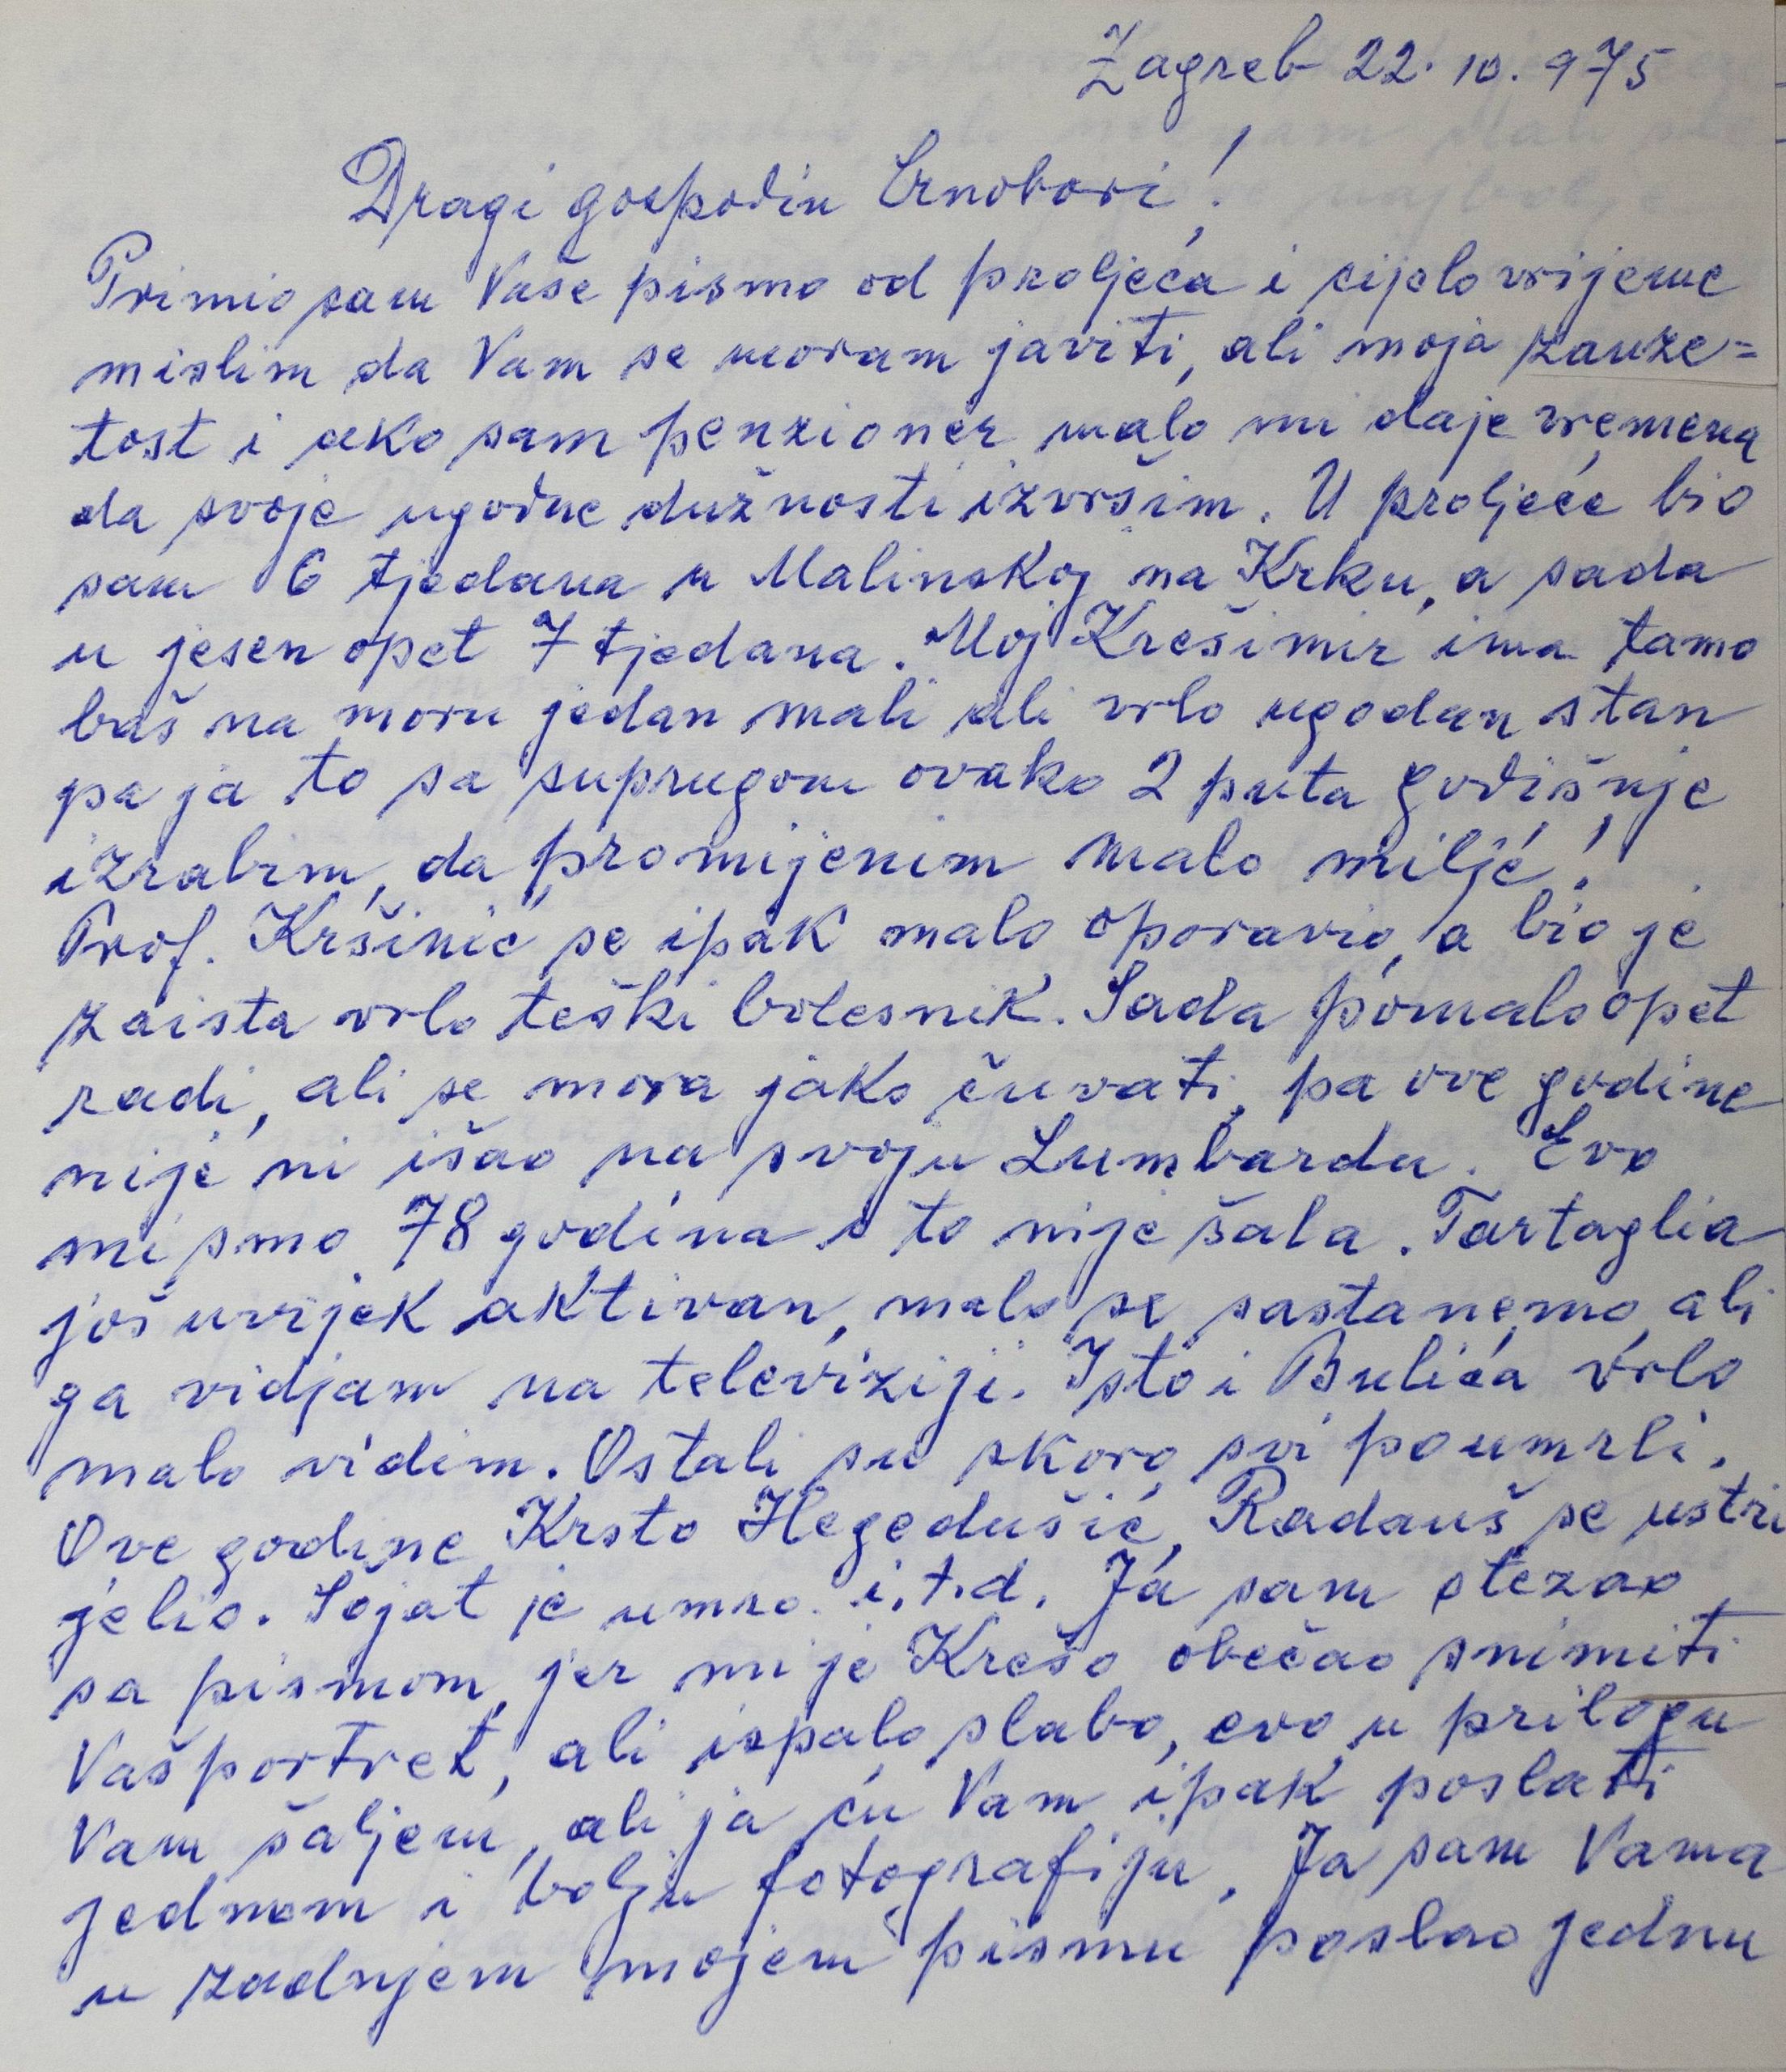 Pismo Zvonimira Pučara Josipu Crnoboriju, 22. 10. 1975.